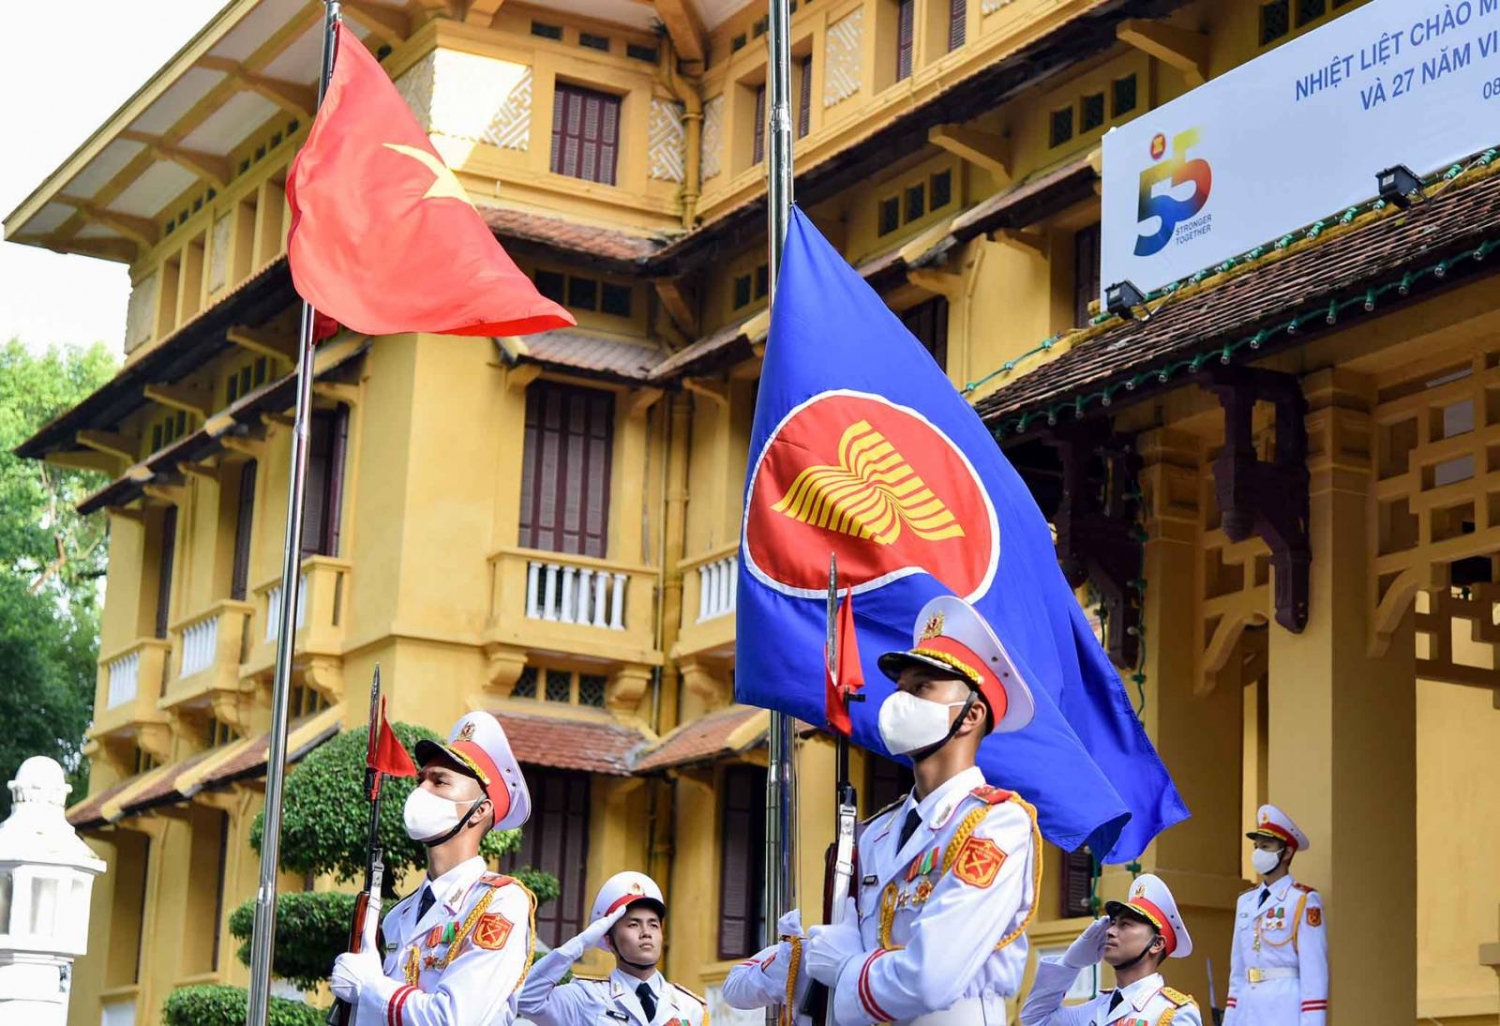 Decal cờ Nhà Nguyễn: Decal cờ Nhà Nguyễn là một sản phẩm mang tính biểu tượng cao của văn hóa truyền thống Việt Nam. Hiện nay, sản phẩm này được đánh giá là một trong những đặc sản của Thừa Thiên Huế và được nhiều du khách yêu thích khi đến thăm khu di tích cố đô Huế.